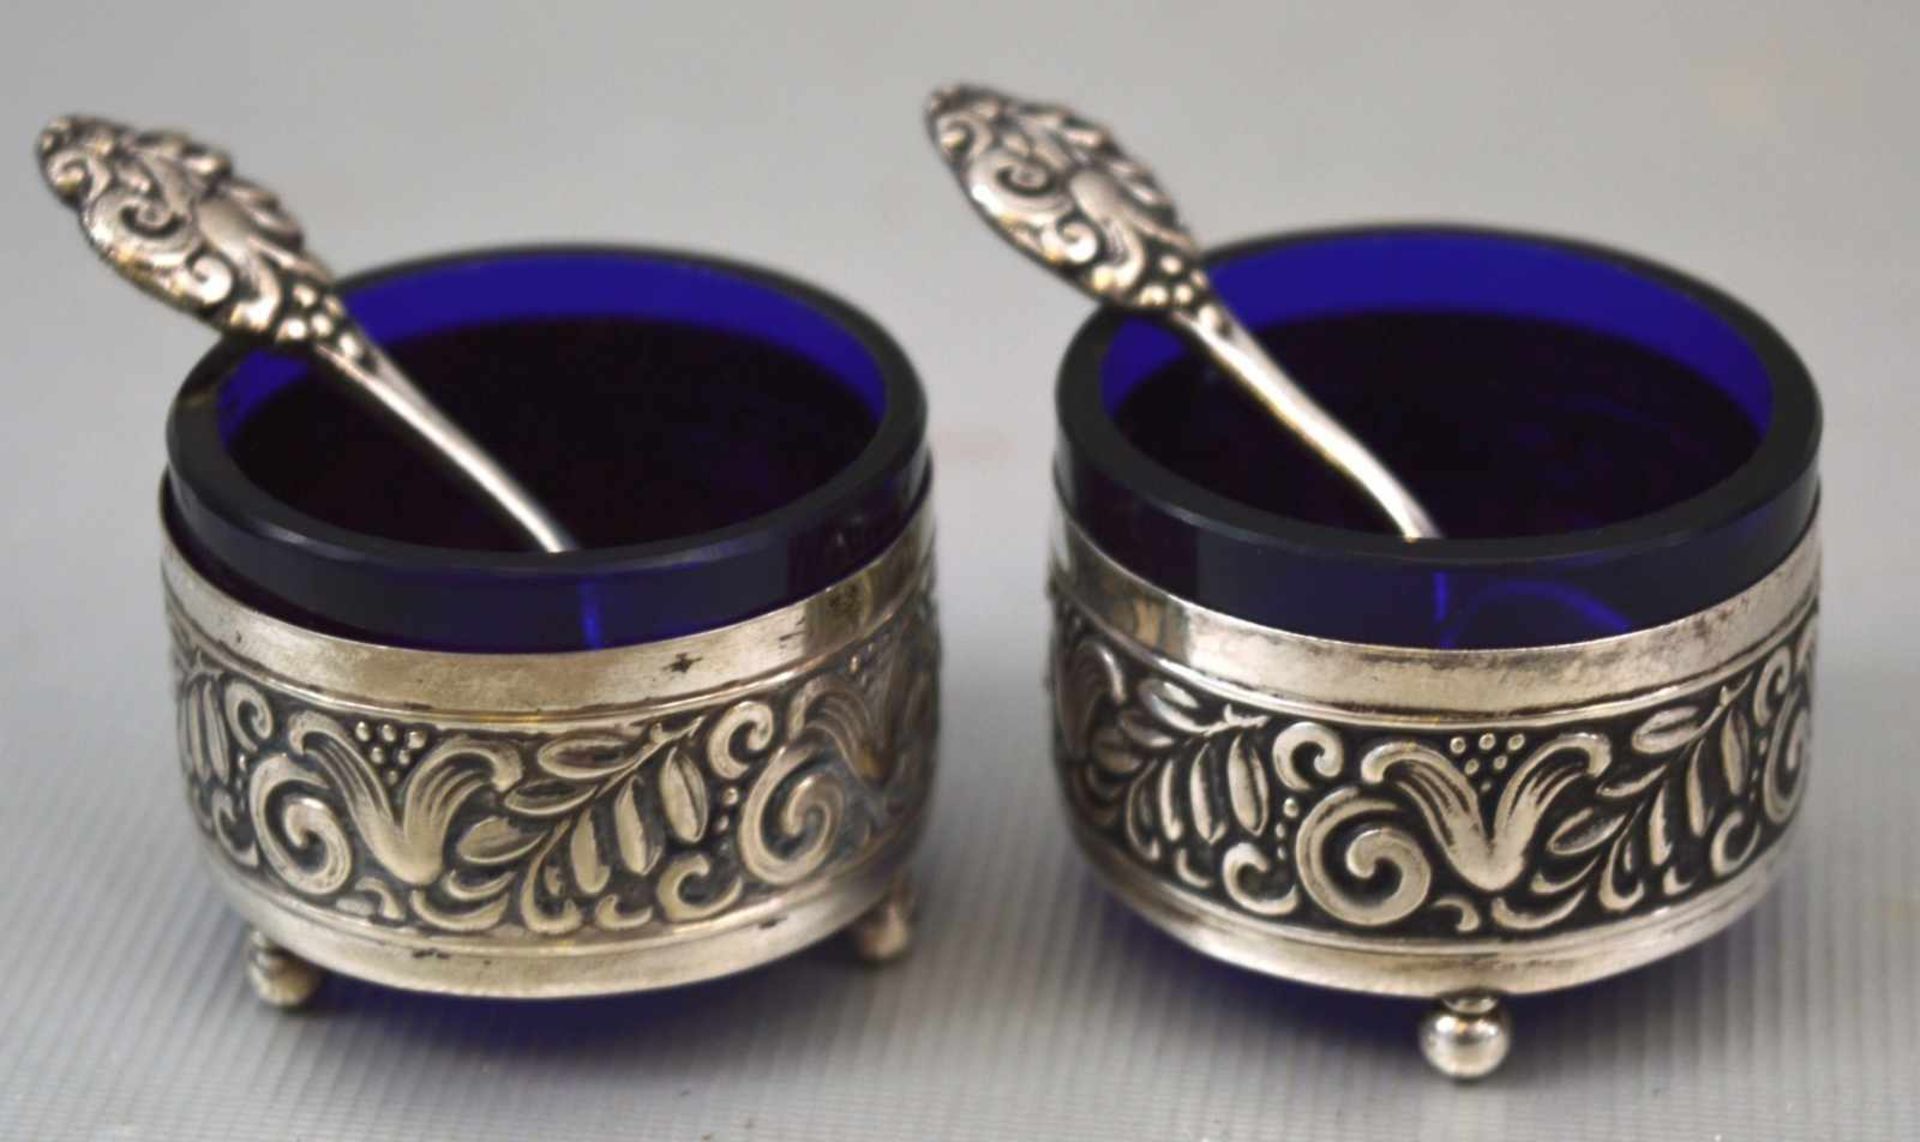 Salz- und Pfefferschälchen rund, auf drei Kugelfüßen stehend, mit Ornamenten verziert, blauer